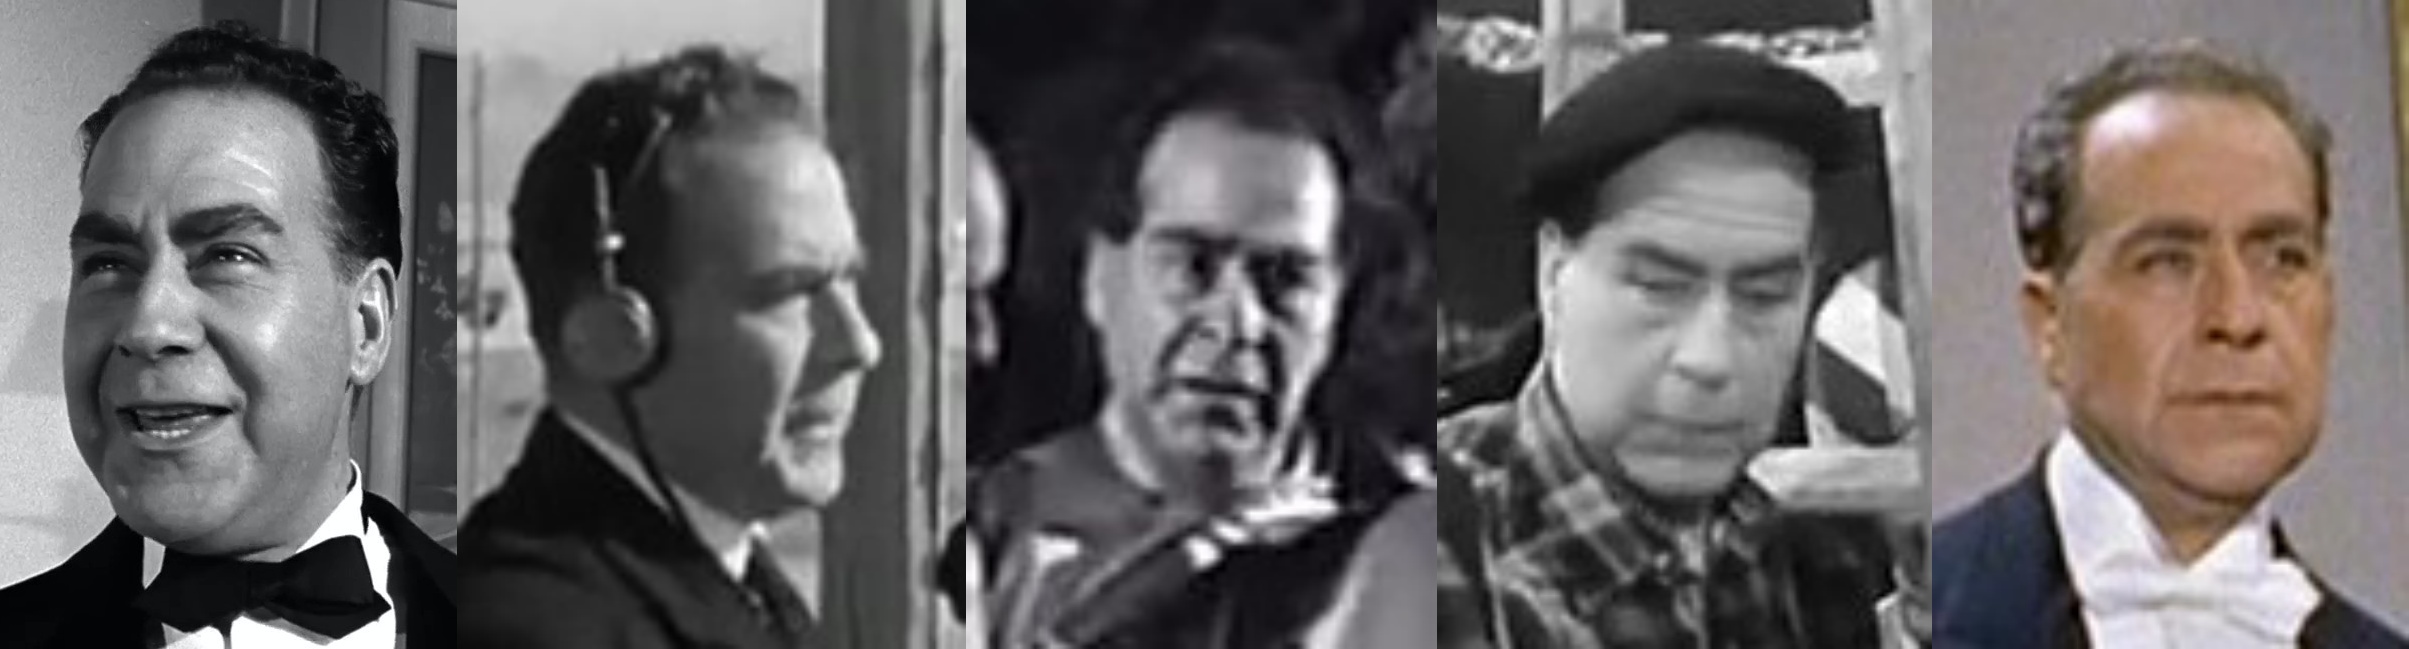 MUERTE DE UN CICLISTA (1955) de Juan Antonio Bardem Con Alberto Closas, Lucia Bosé, Otello Toso, Carlos Casaravilla, Bruno Corra, Alicia Romay por Garufa11a-side.jpg